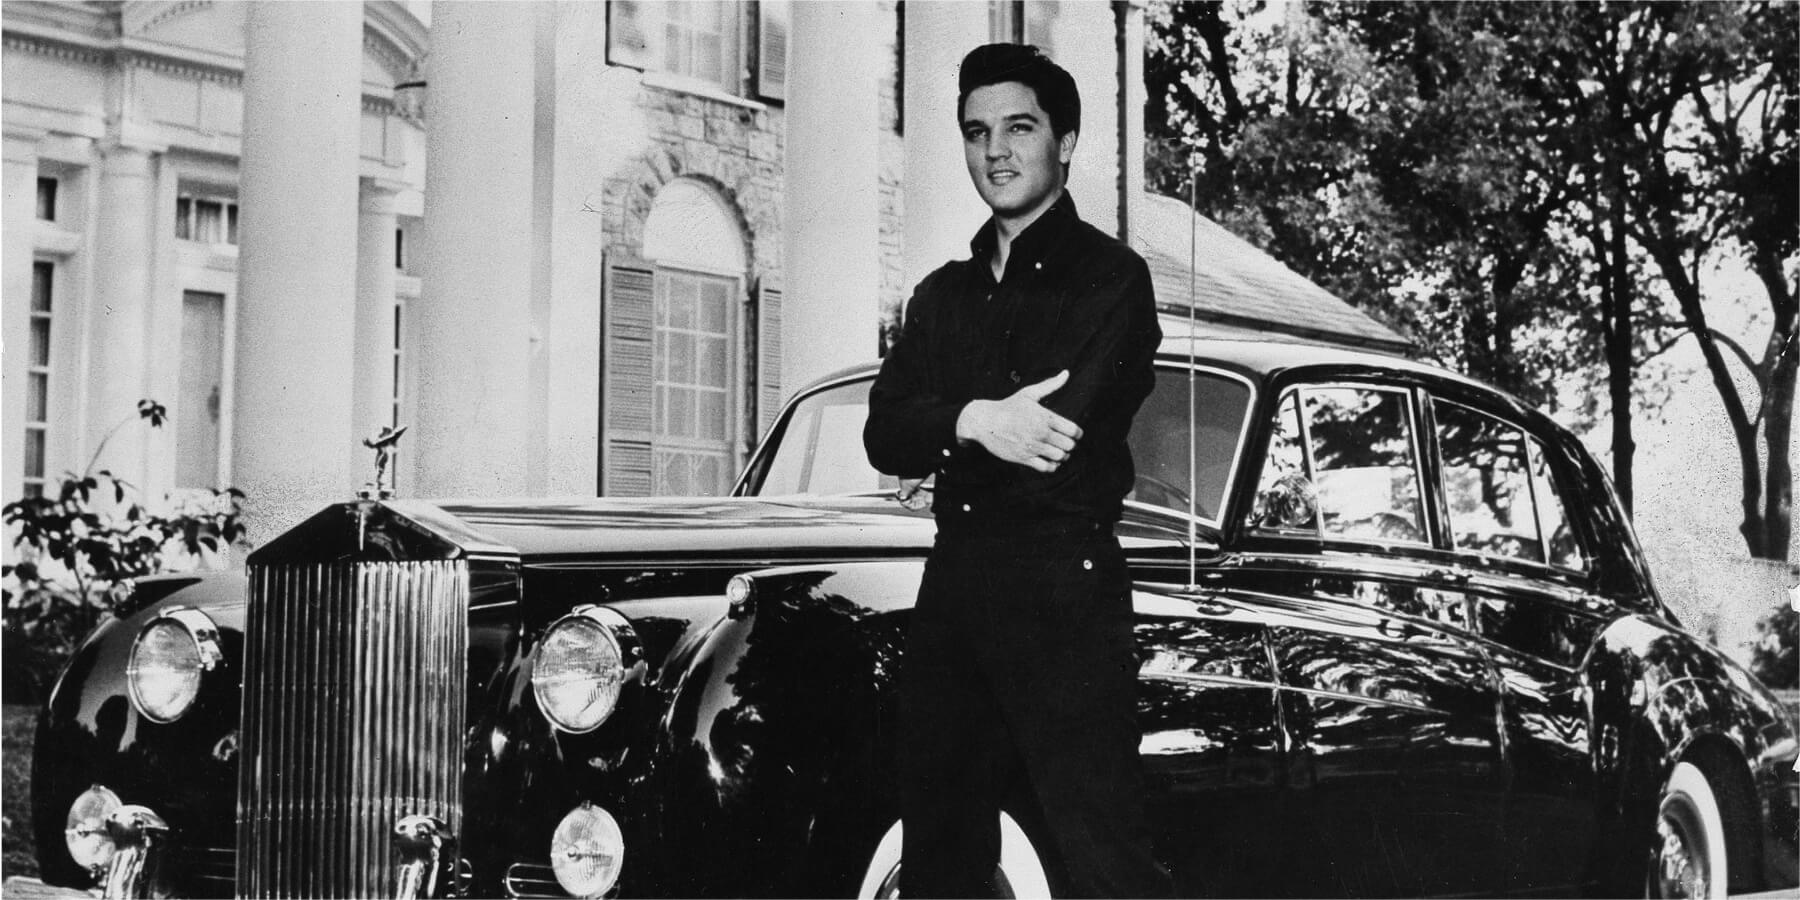 Elvis Presley photographed outside of Graceland